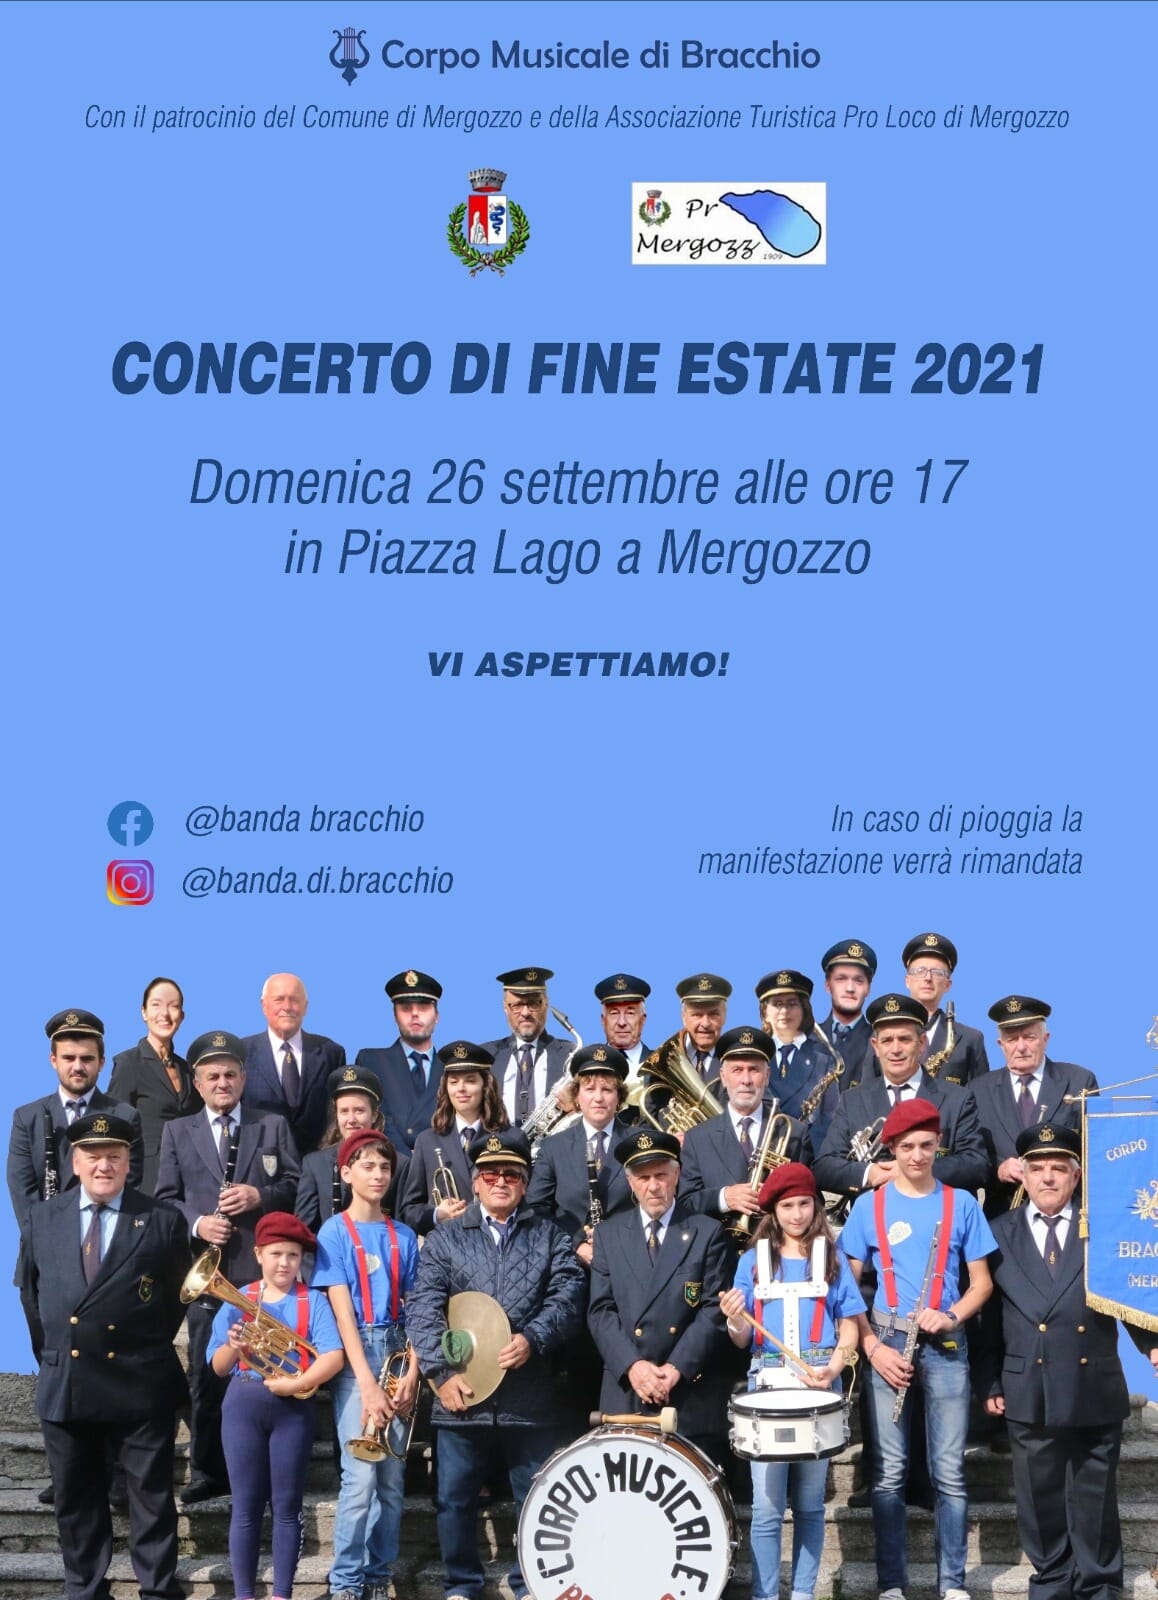 Concerto di Fine Estate 2021 - Corpo Musicale di Bracchio